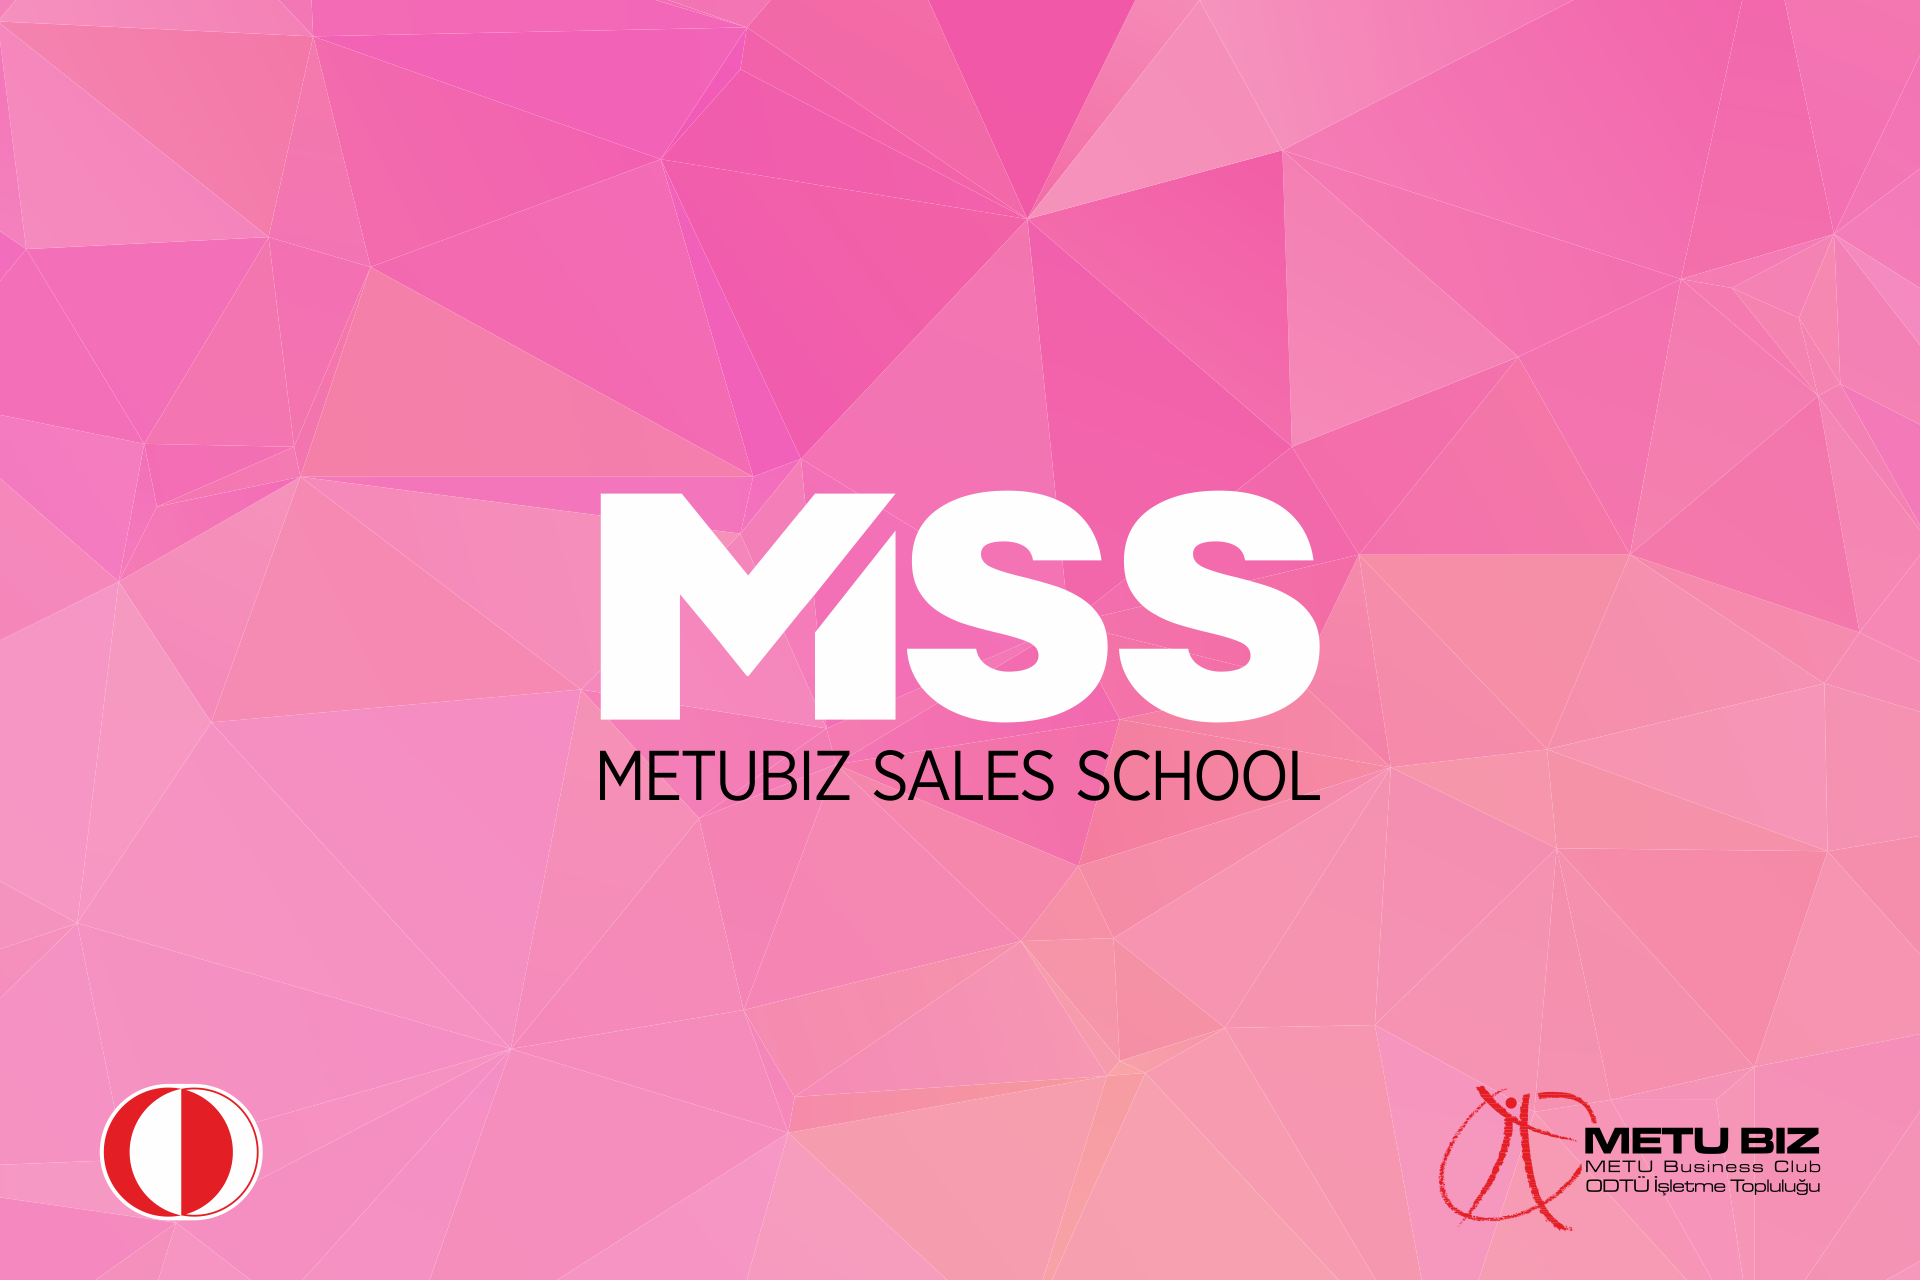 Metubiz Sales School